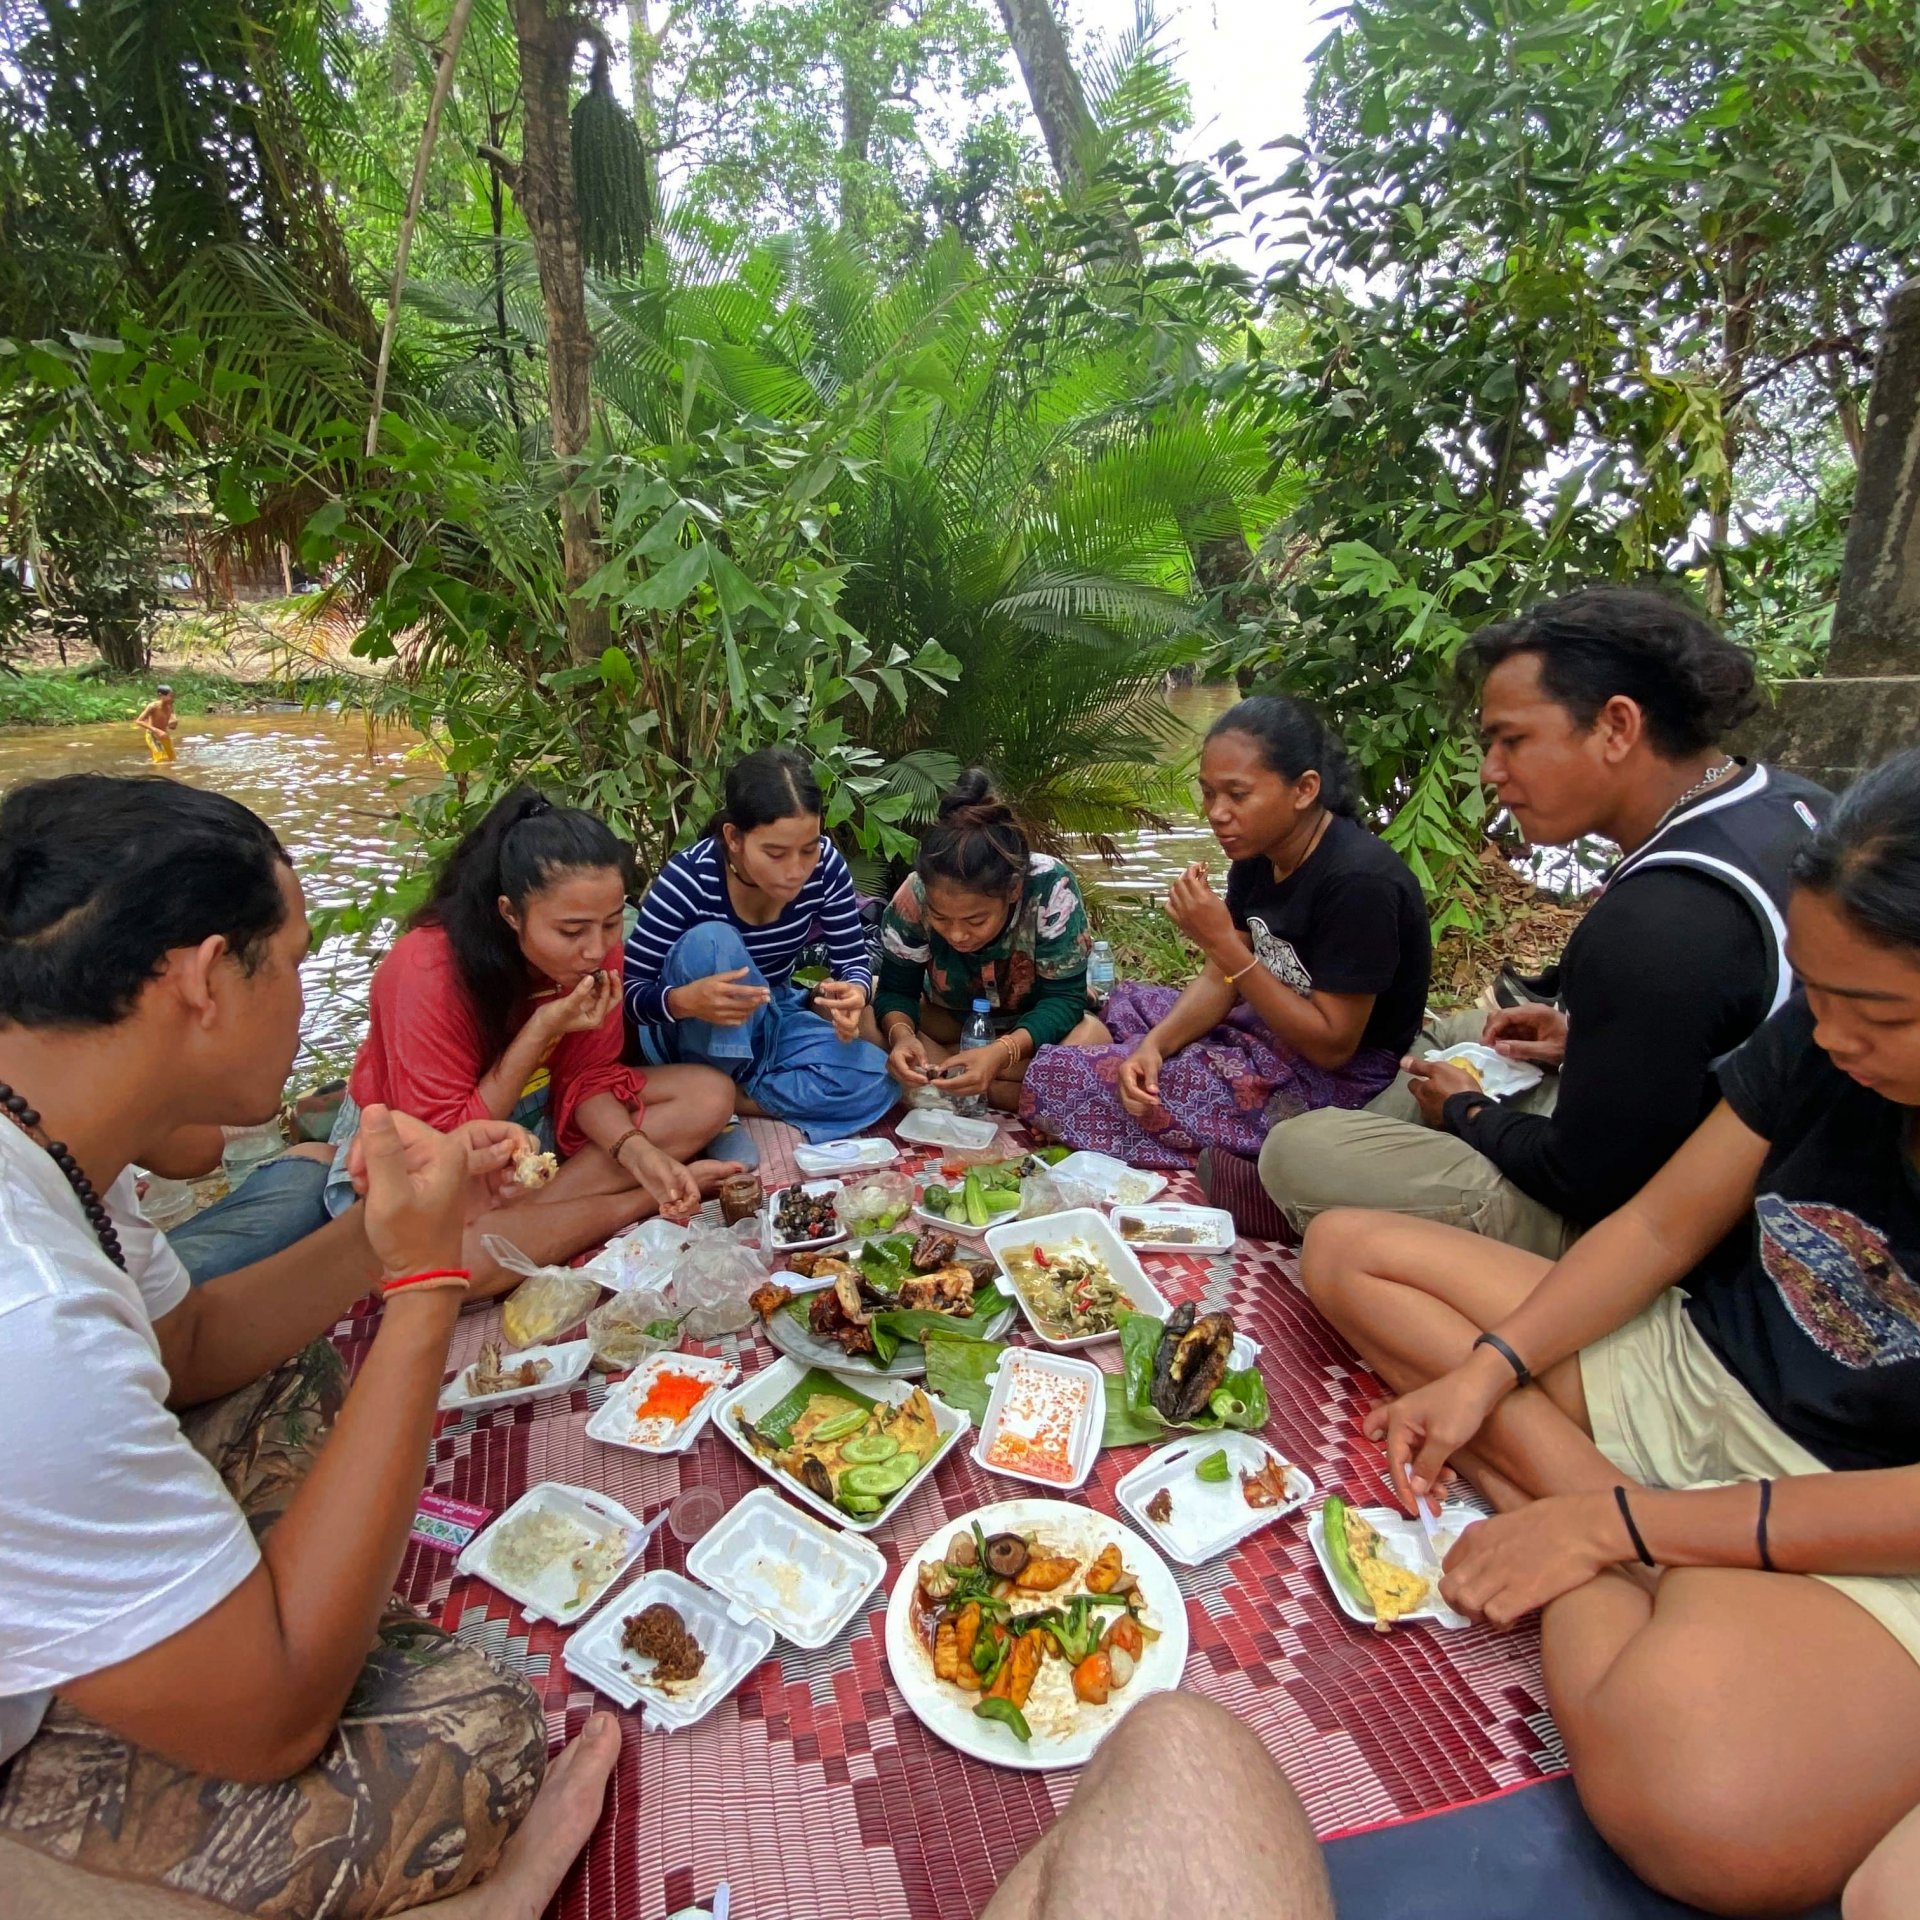 Co doma vaří Khmerové?